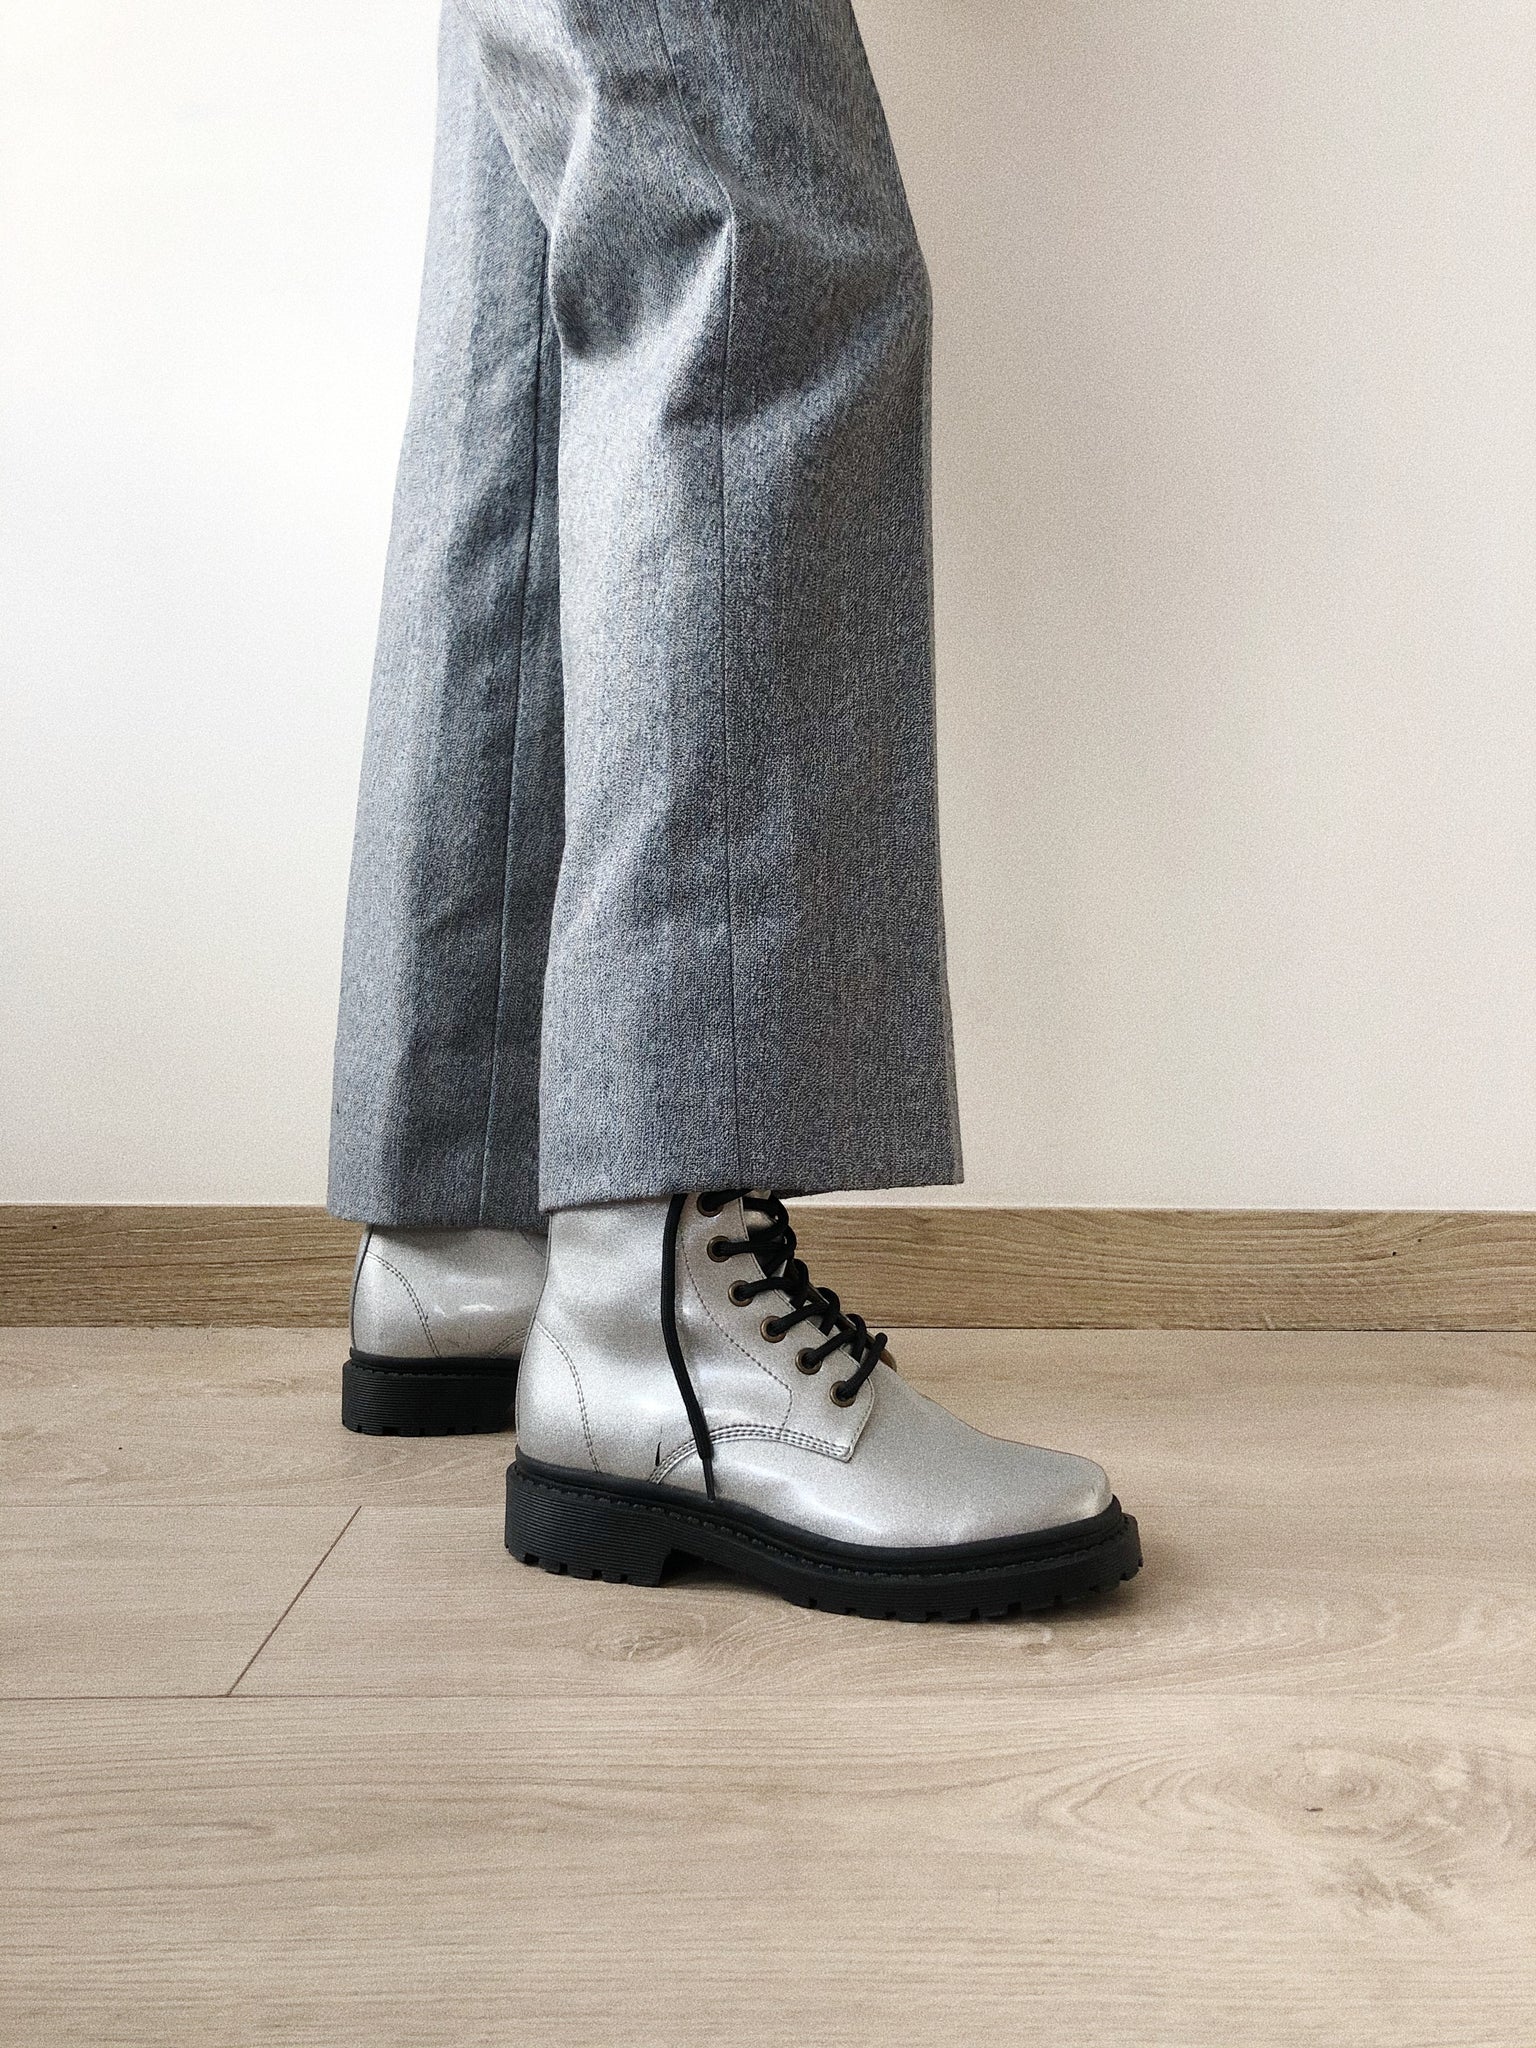 Gray Vintage Pants